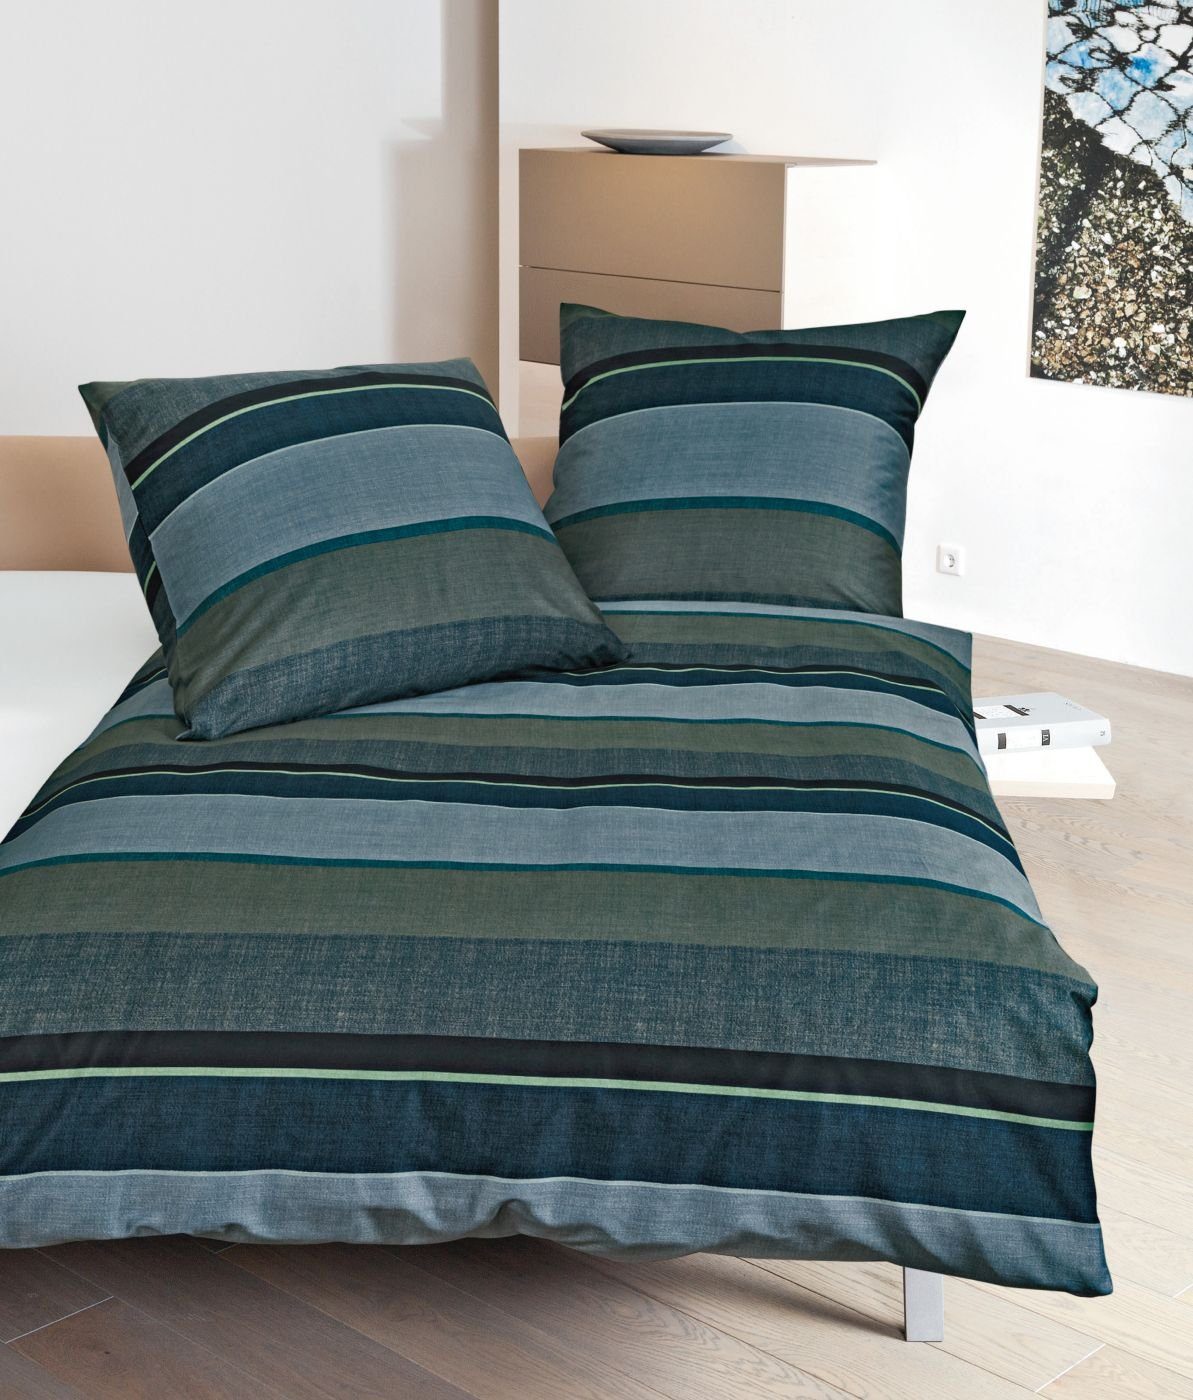 Bettwäsche Mako-Satin Bettwäsche 2tlg 135 x 200 cm grünblau, Janine,  Baumolle, 2 teilig, Bettbezug Kopfkissenbezug Set kuschelig weich hochwertig